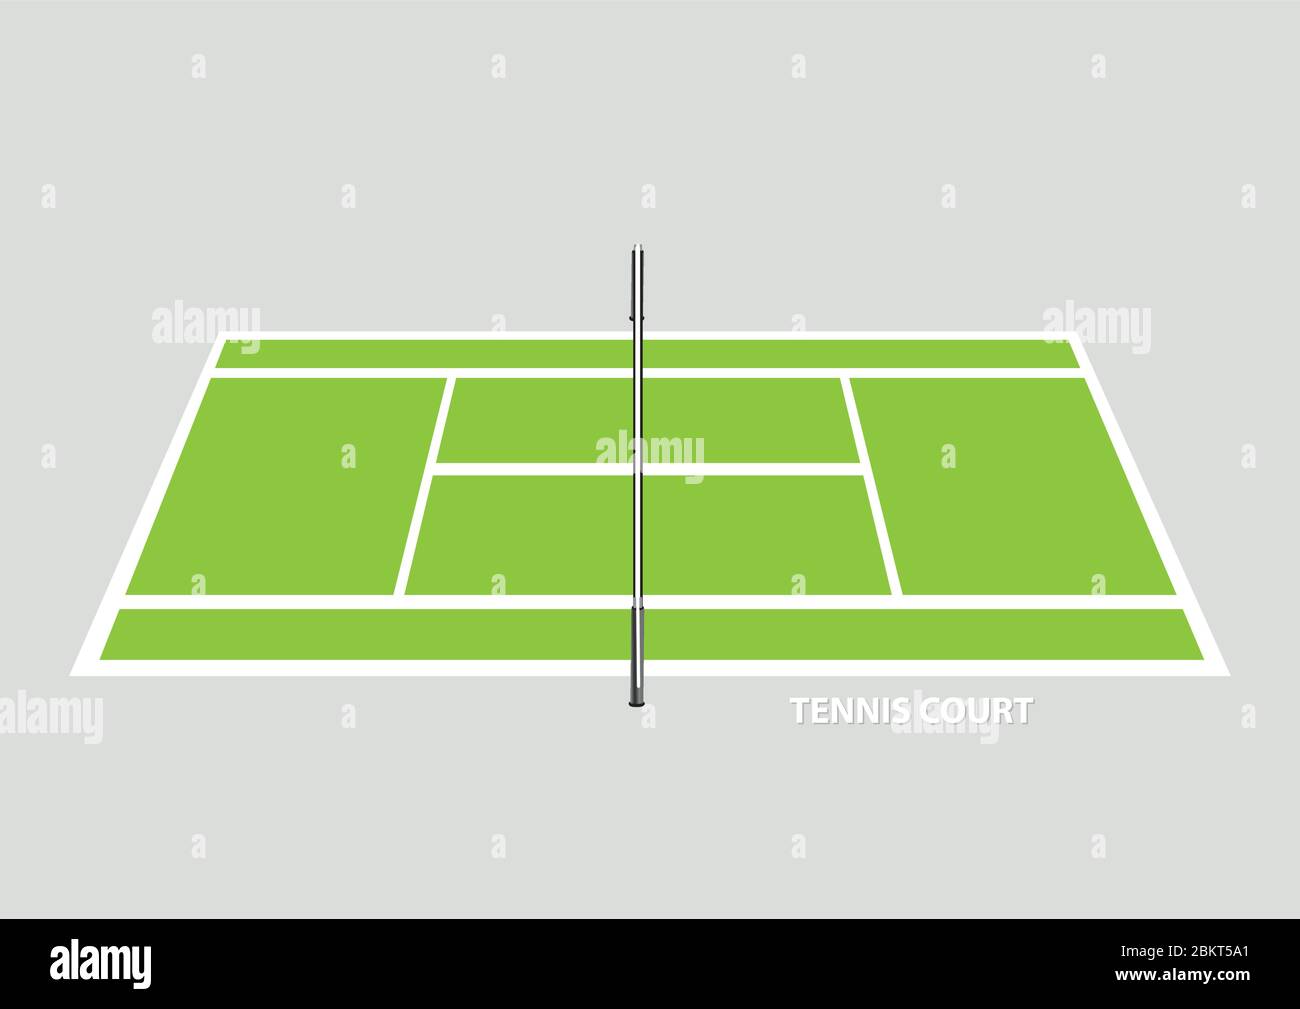 Terrain de tennis vide avec filet séparateur au milieu, vu du côté en vue  en hauteur. Illustration vectorielle isolée sur fond plat Image Vectorielle  Stock - Alamy